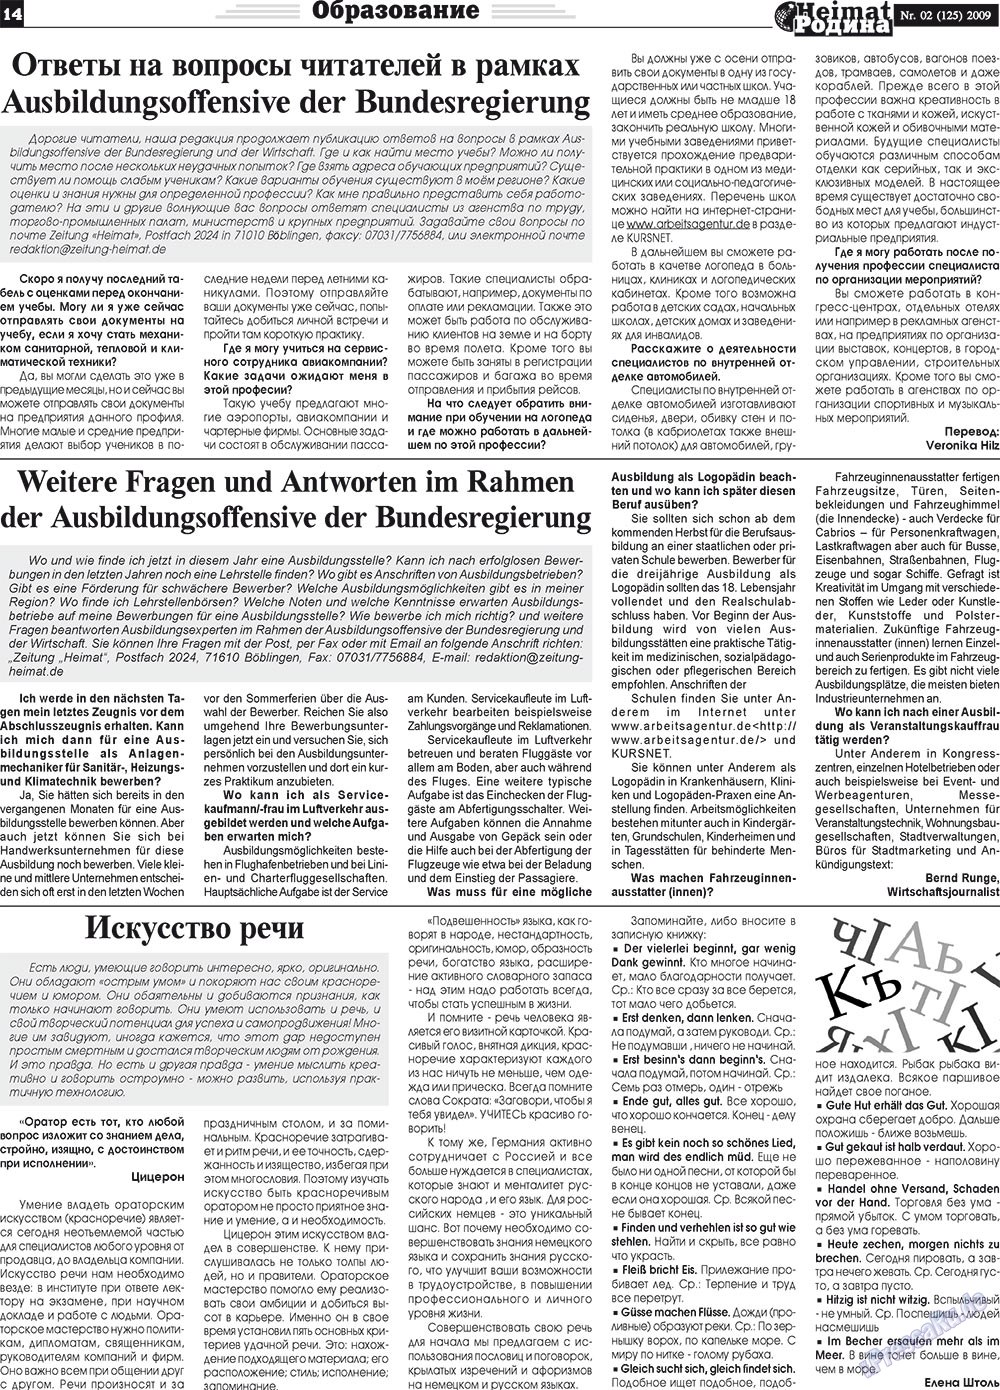 Heimat-Родина (газета). 2009 год, номер 2, стр. 14